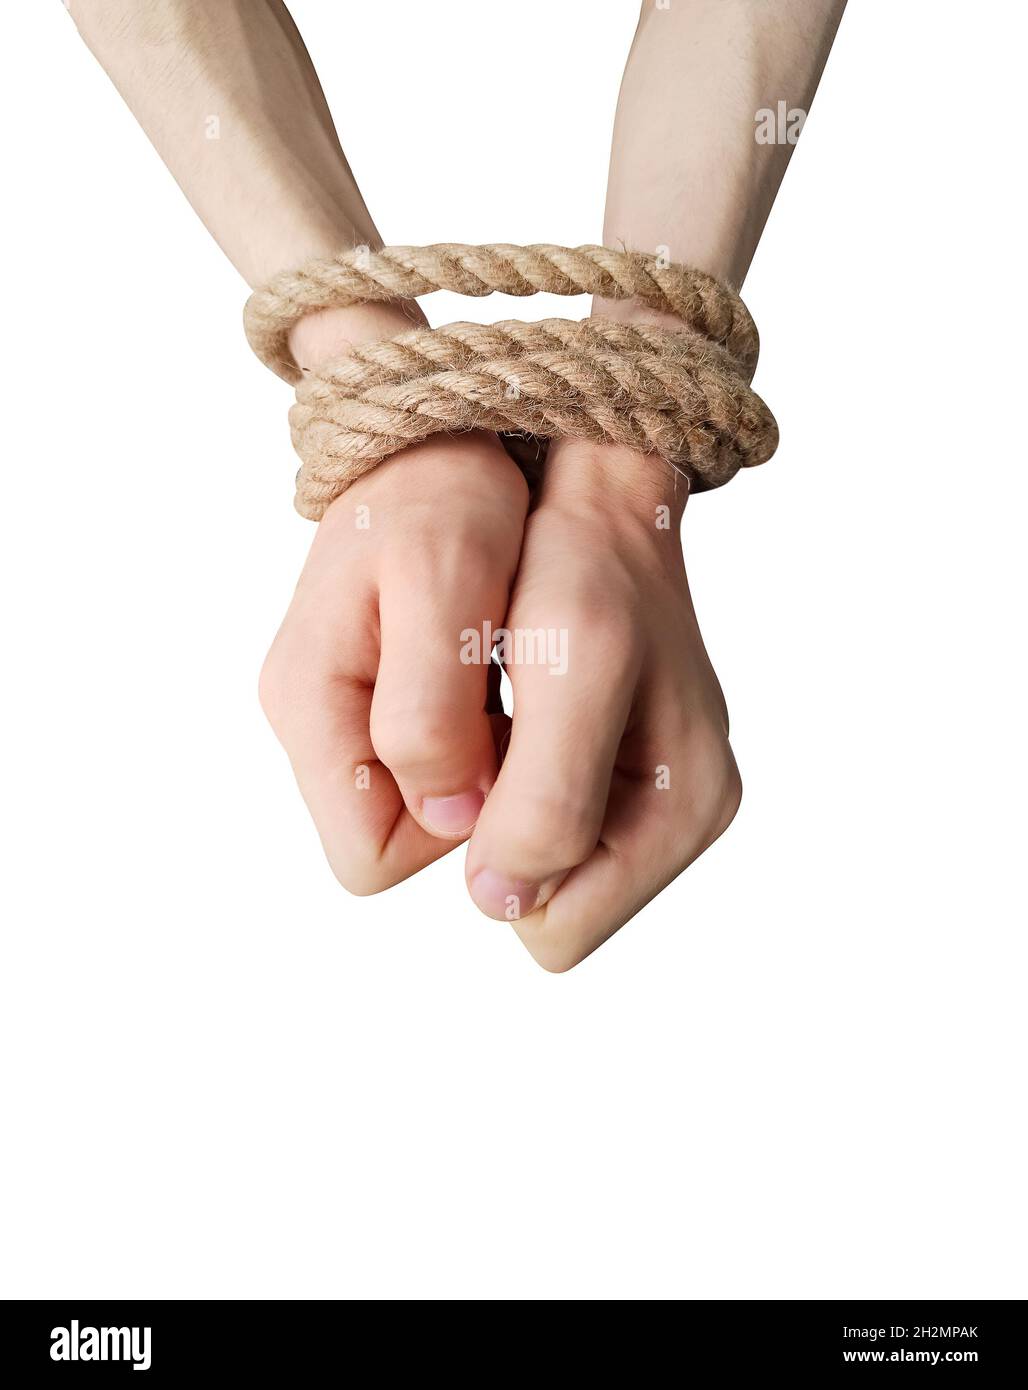 Les mains de l'adolescent sont attachées avec un cordon de corde isolé sur fond blanc Banque D'Images